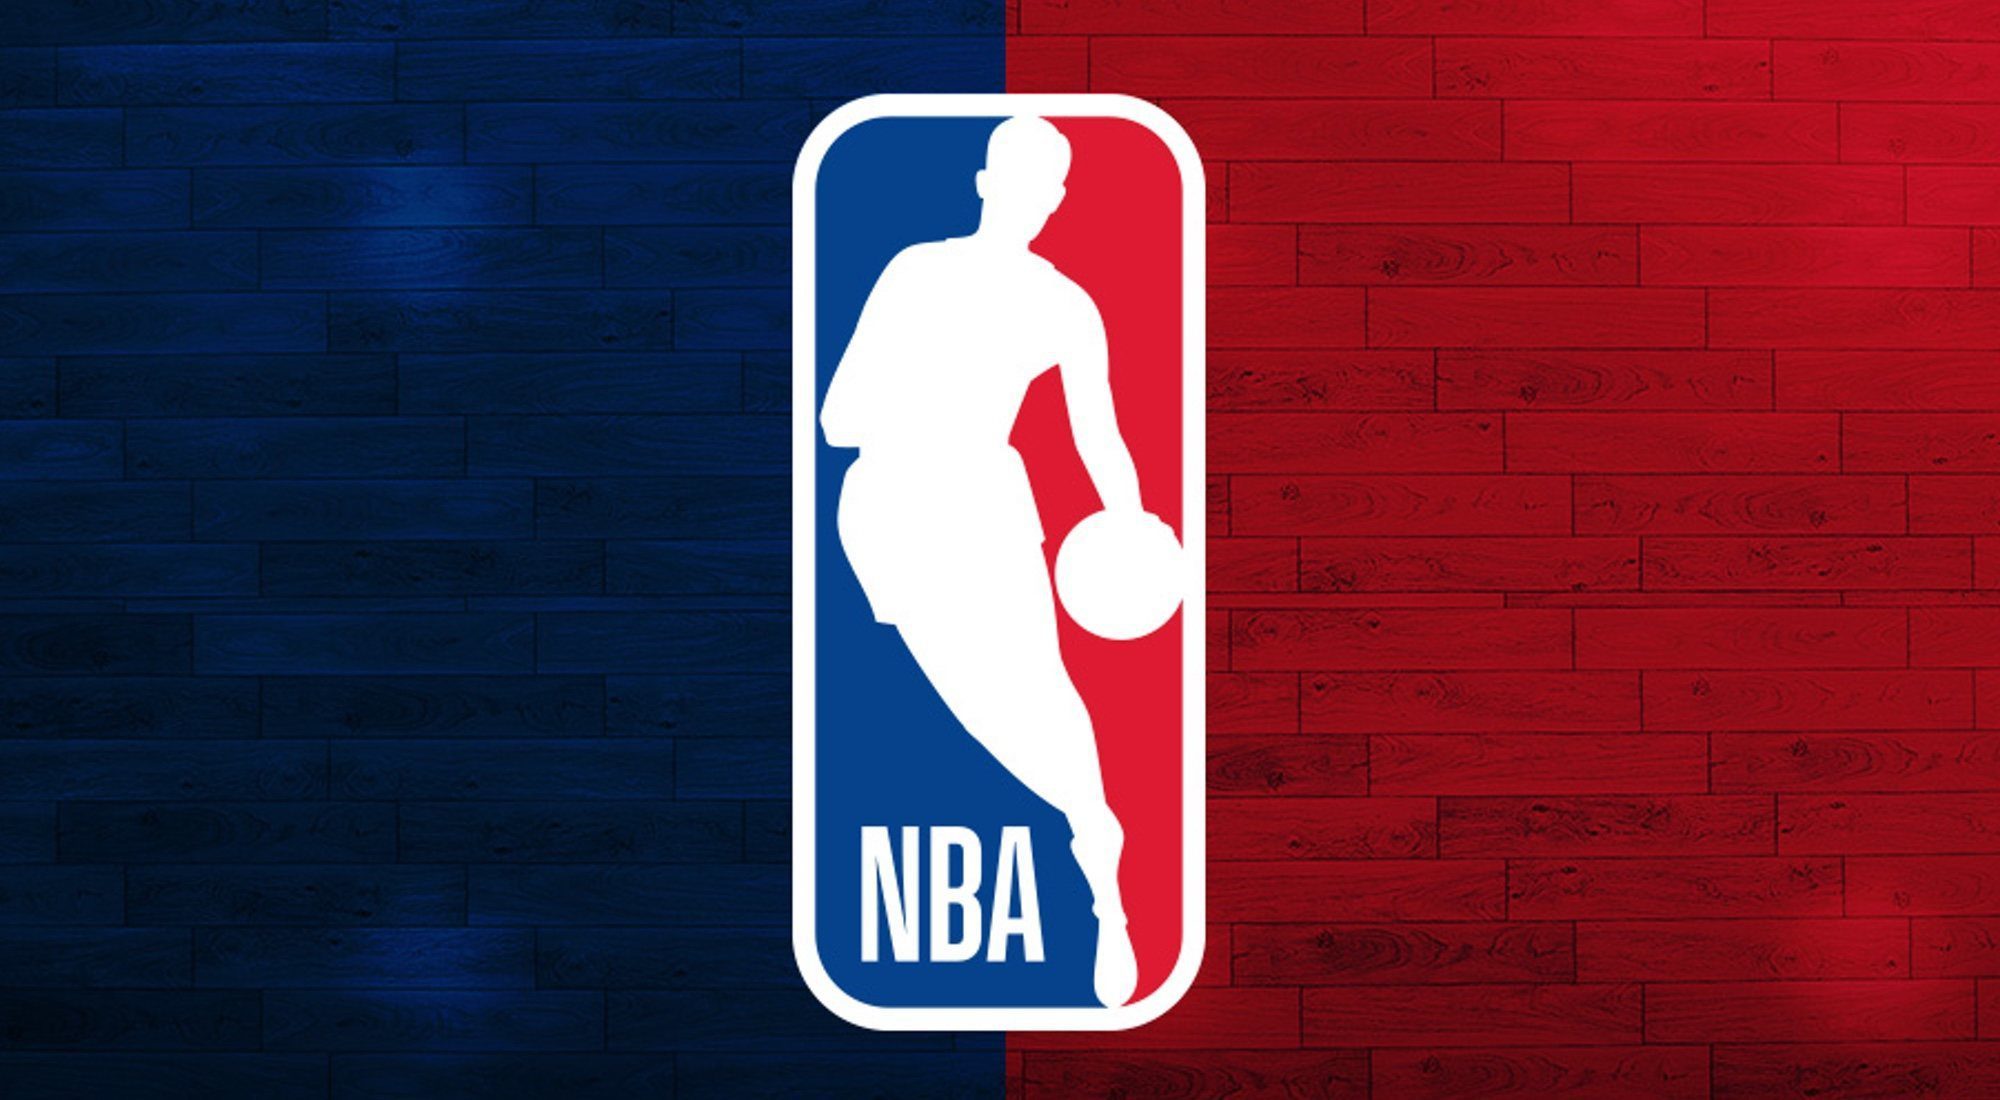  NBA busca alternativas para jugar la temporada